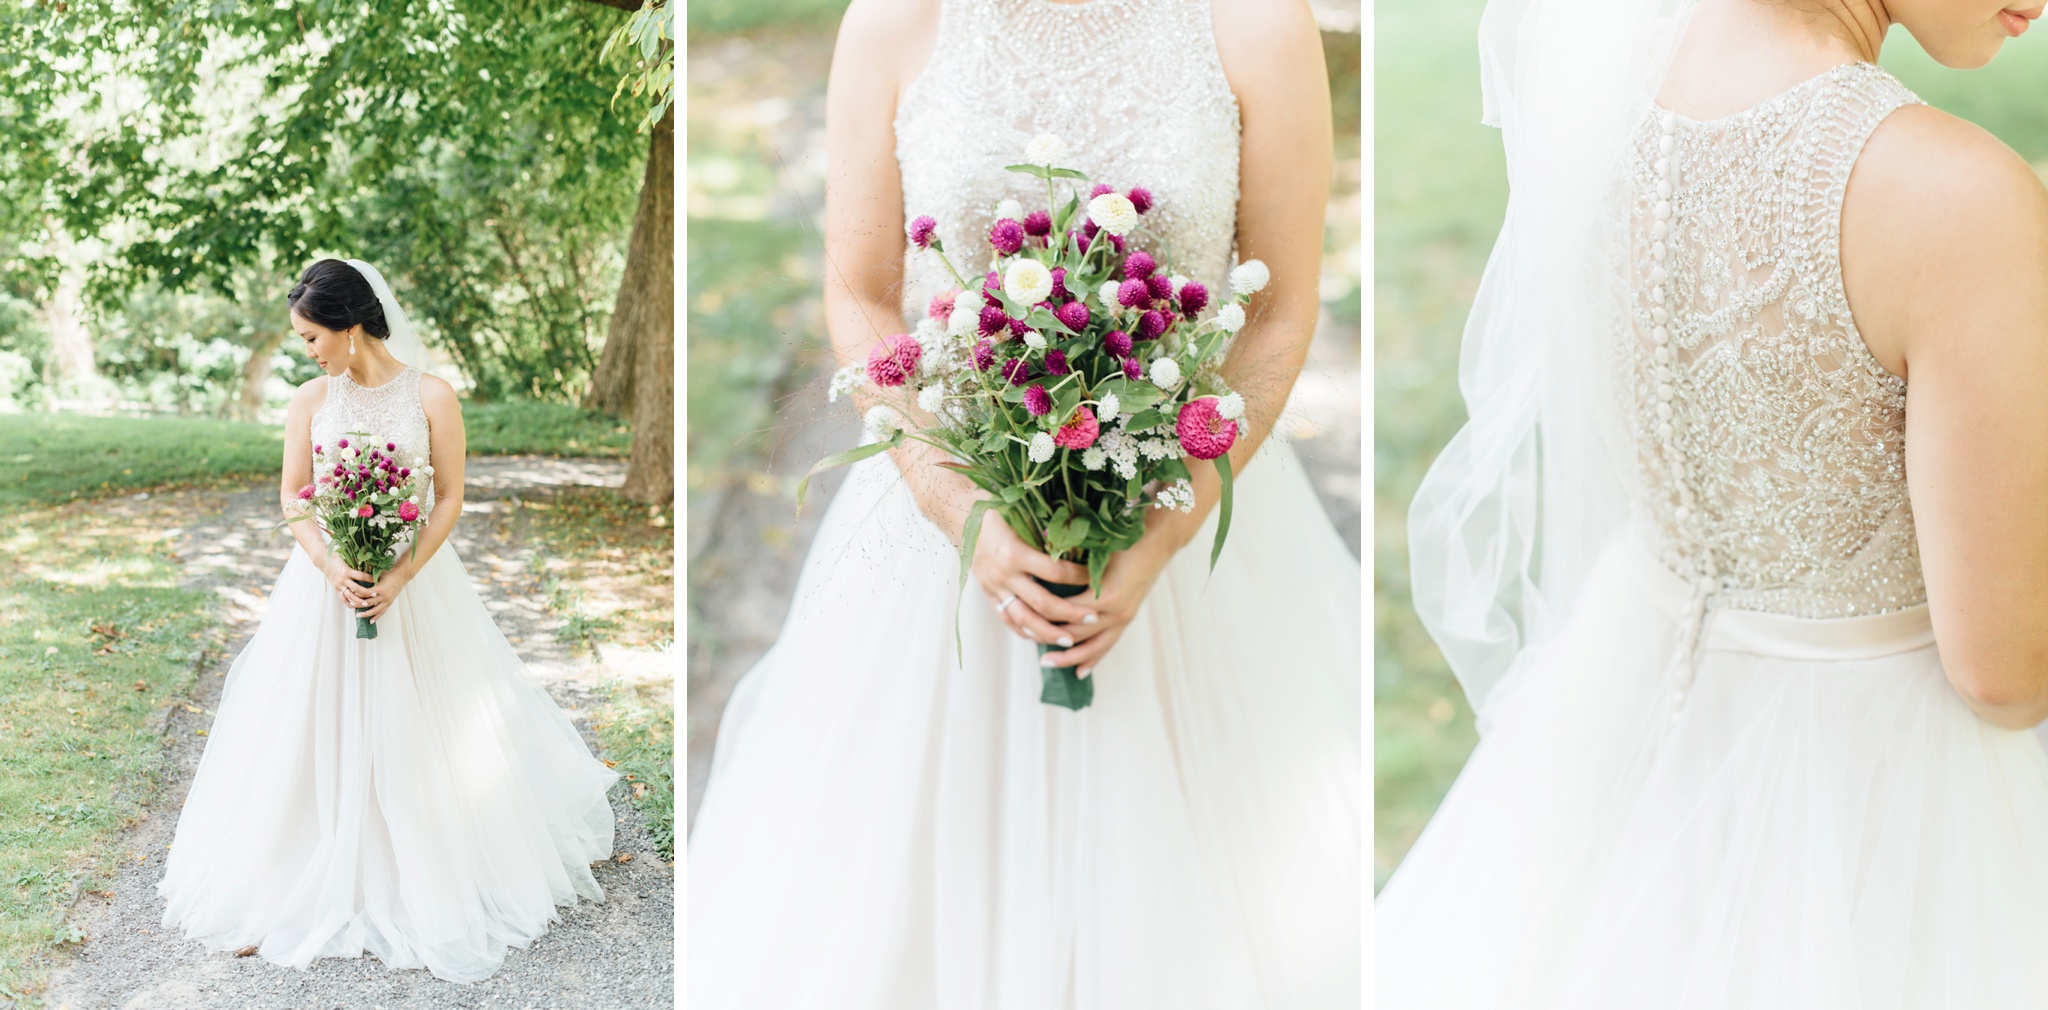 Moon + Nina - Bartram's Garden Wedding - Philadelphia Wedding Photographer - Alison Dunn Photography photo-11